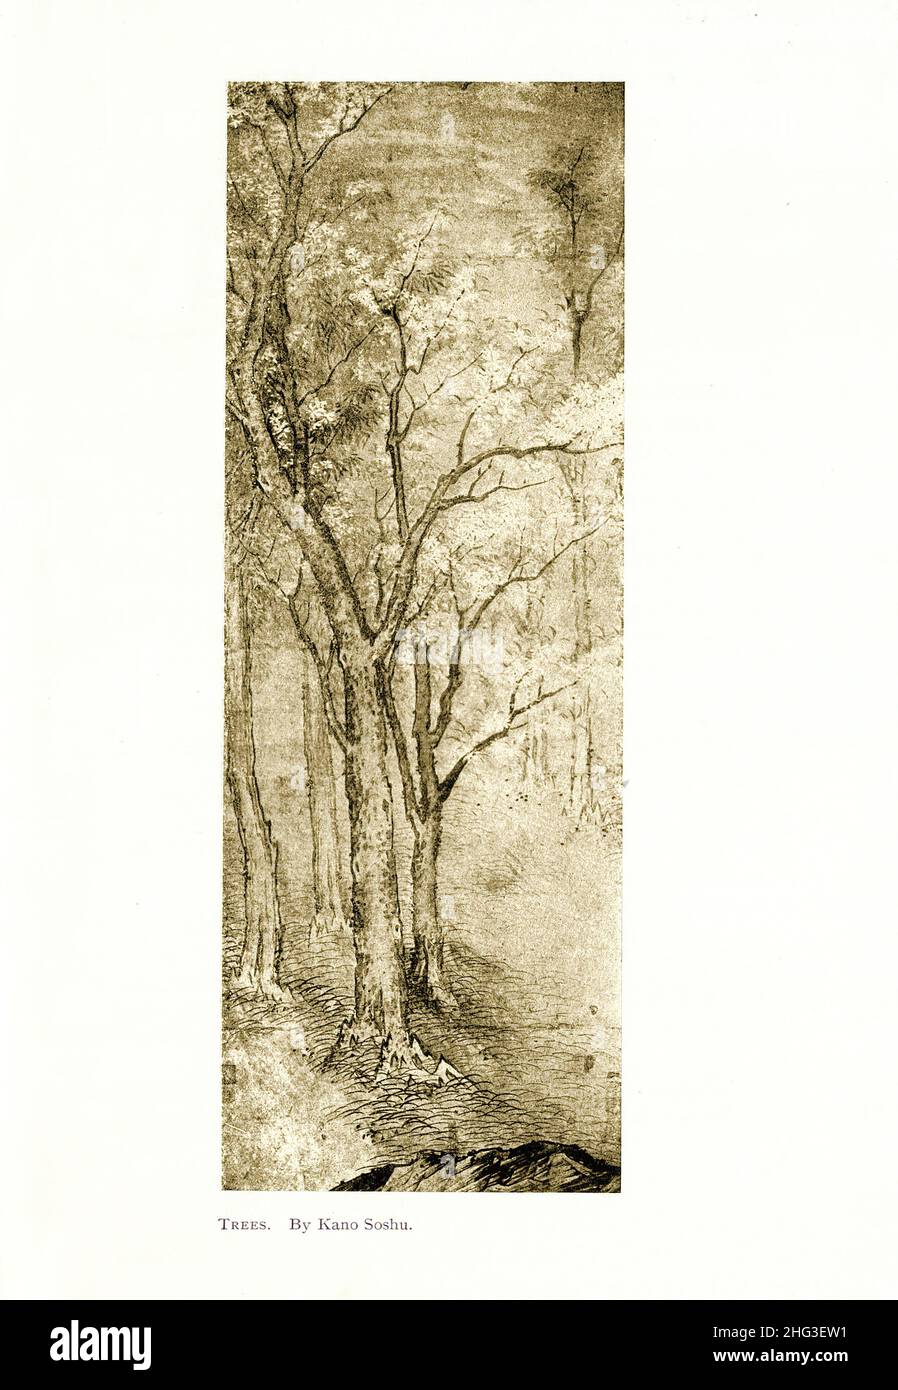 Japanische mittelalterliche Malerei: Bäume. Von Kano Soshu. Reproduktion der Buchdarstellung von 1912 Stockfoto